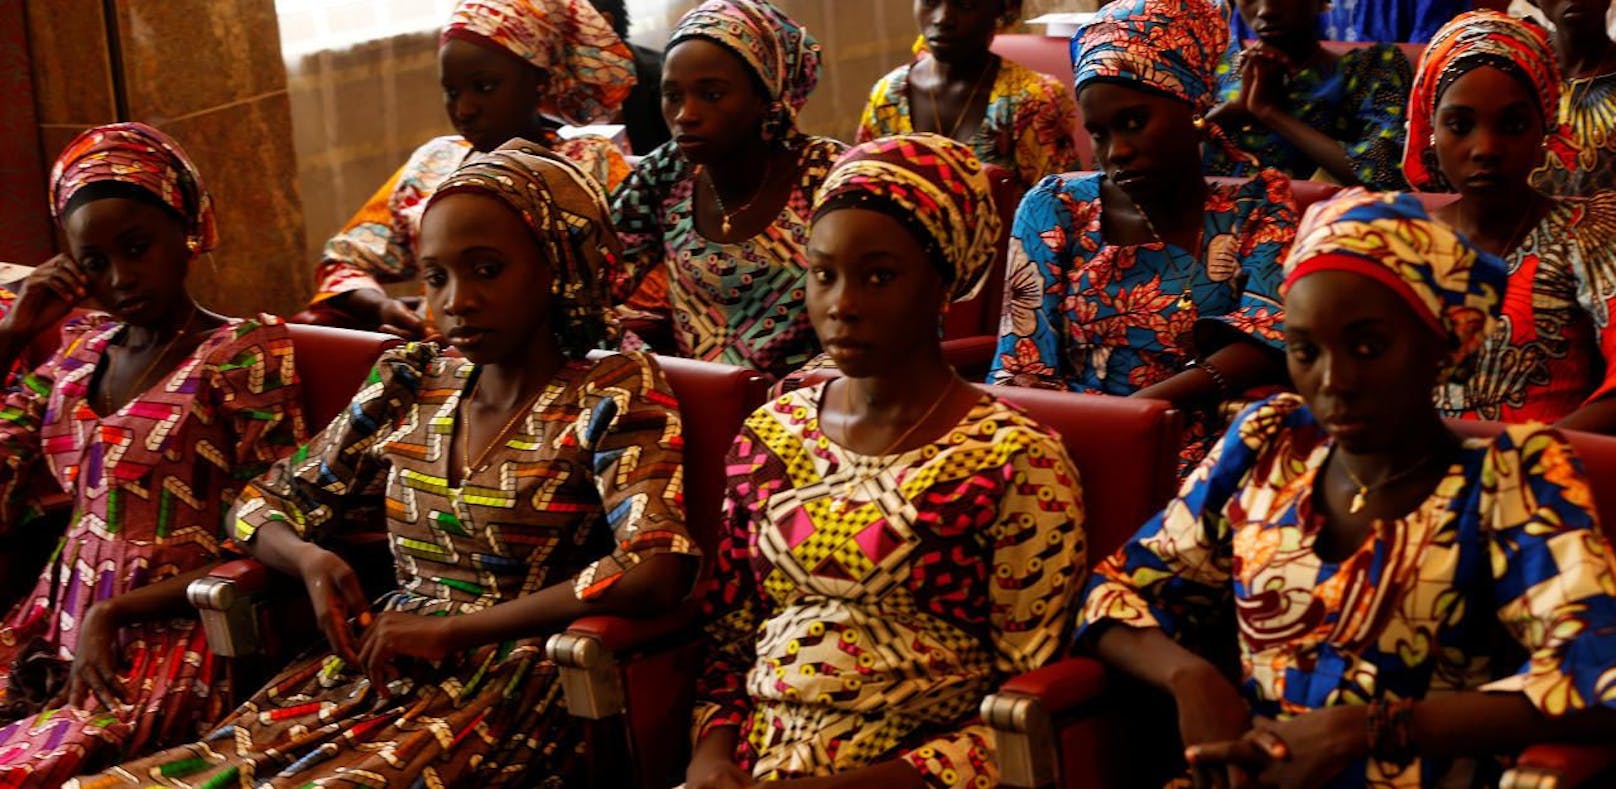 Boko Haram-Islamisten lassen Mädchen frei